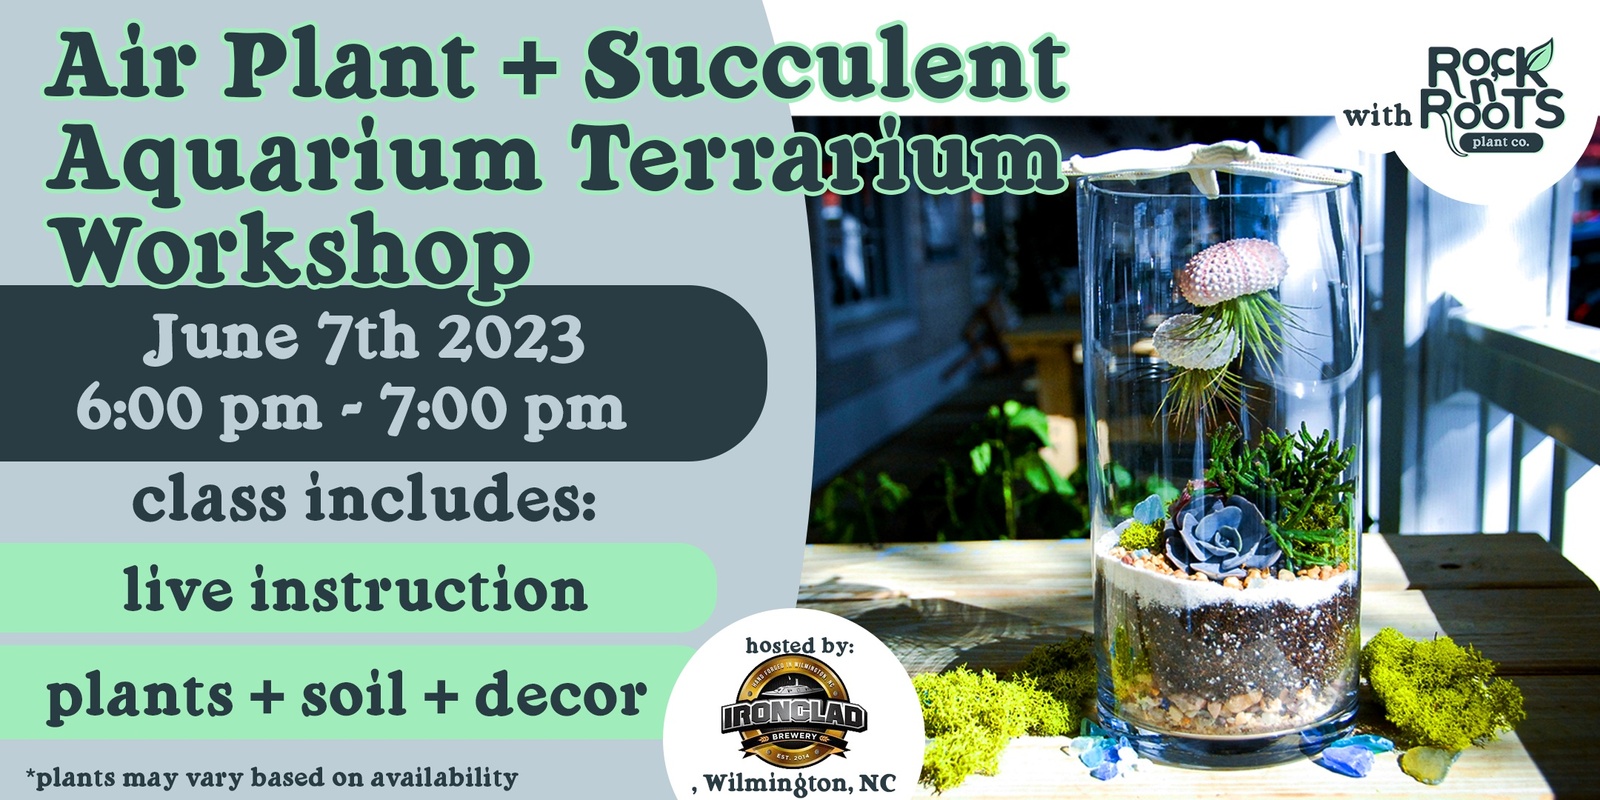 Air Plant + Succulent Aquarium Terrarium Workshop at Ironclad Brewery (Wilmington, NC)